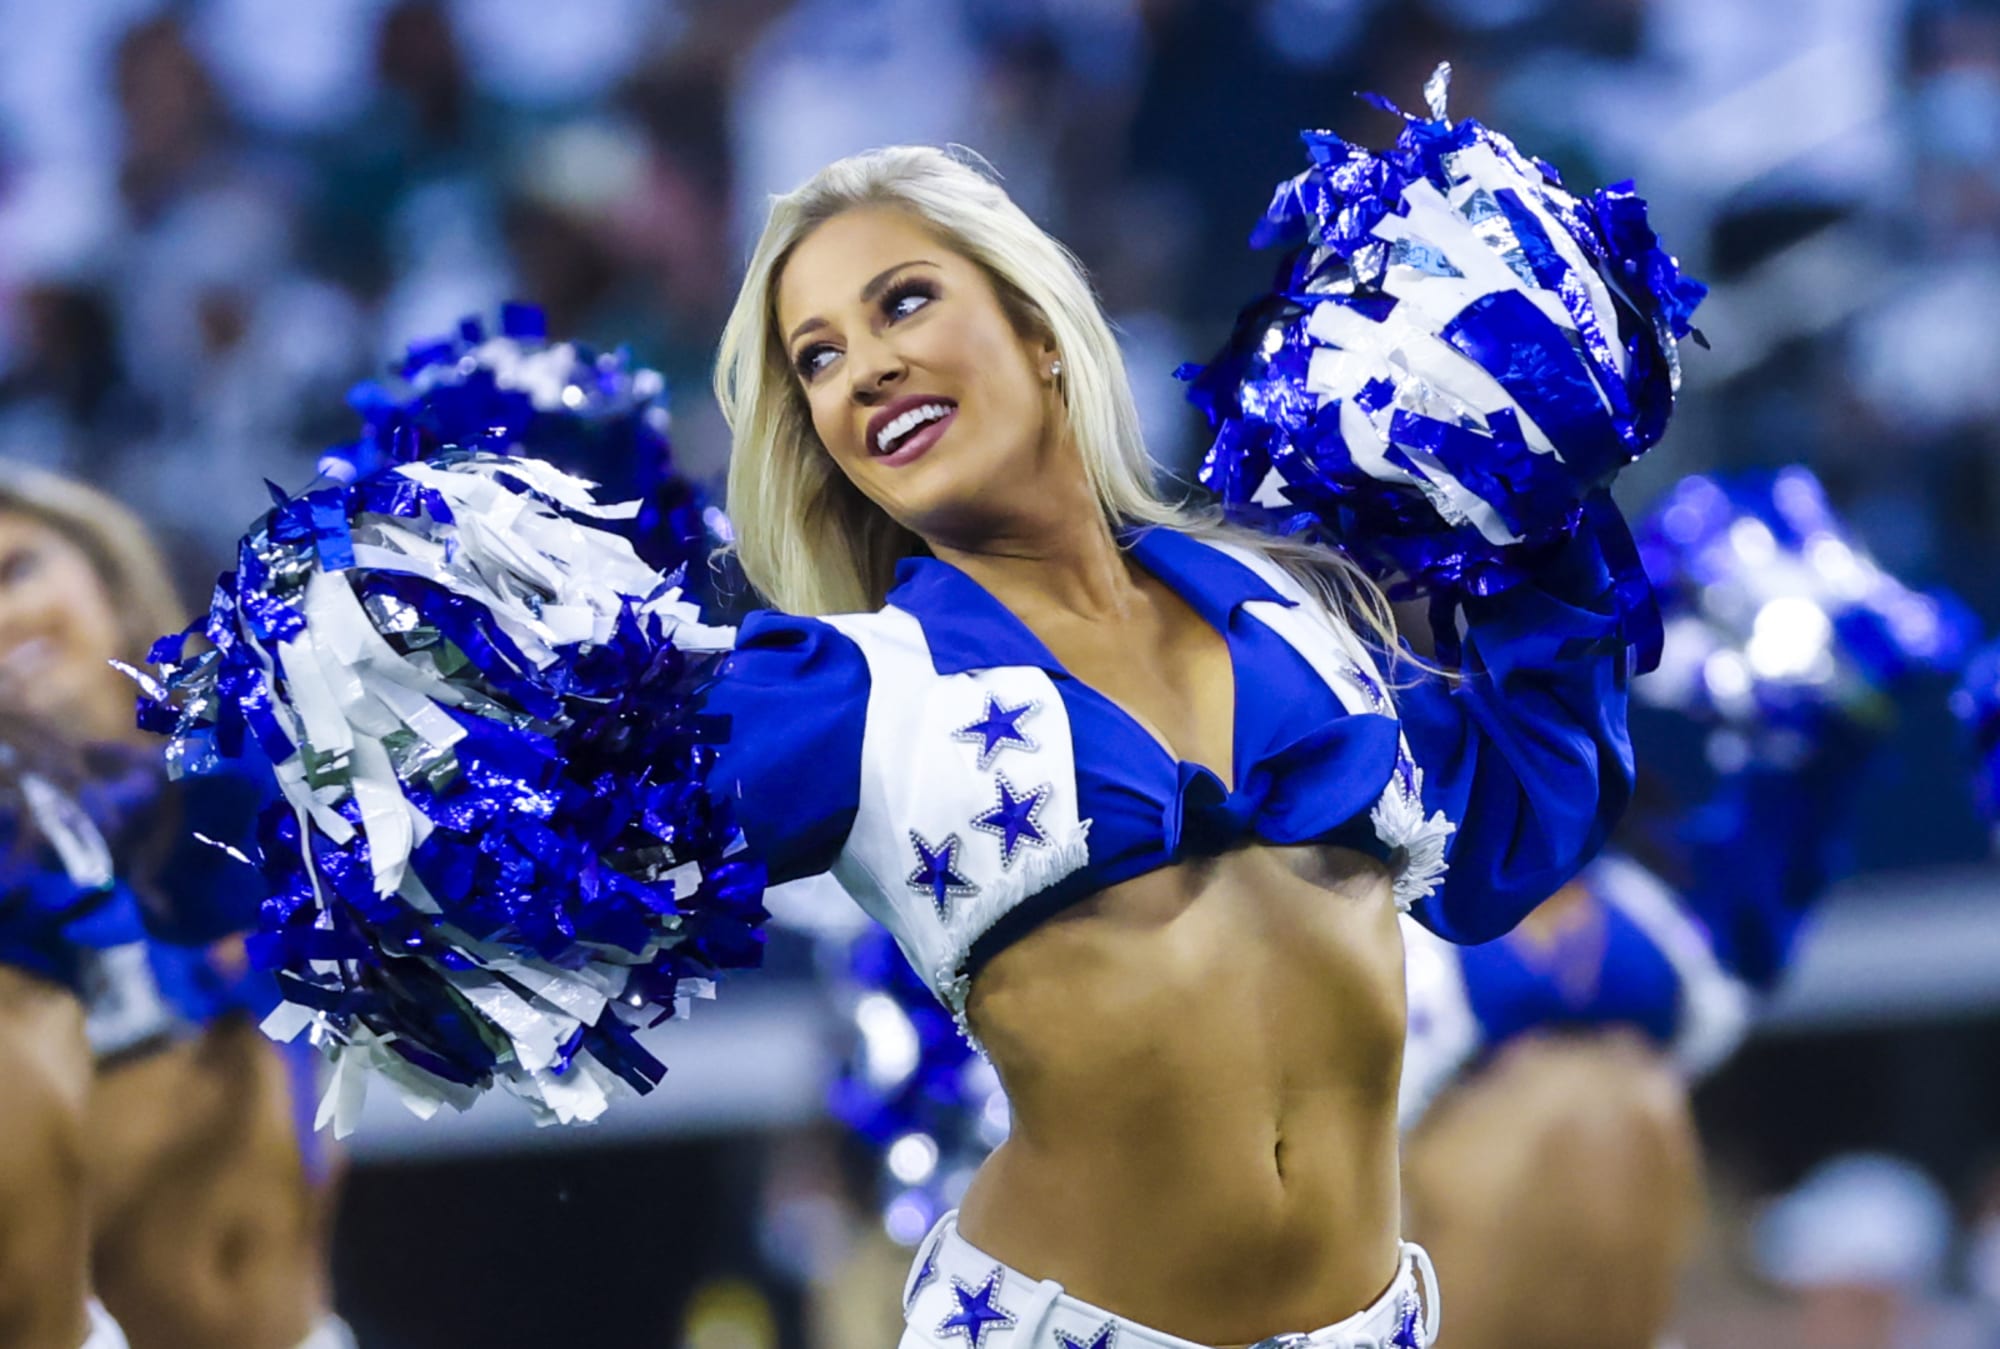 Havslug skab ophobe Dallas Cowboys Draft: 5 Draft prospects Cowboys fans should know